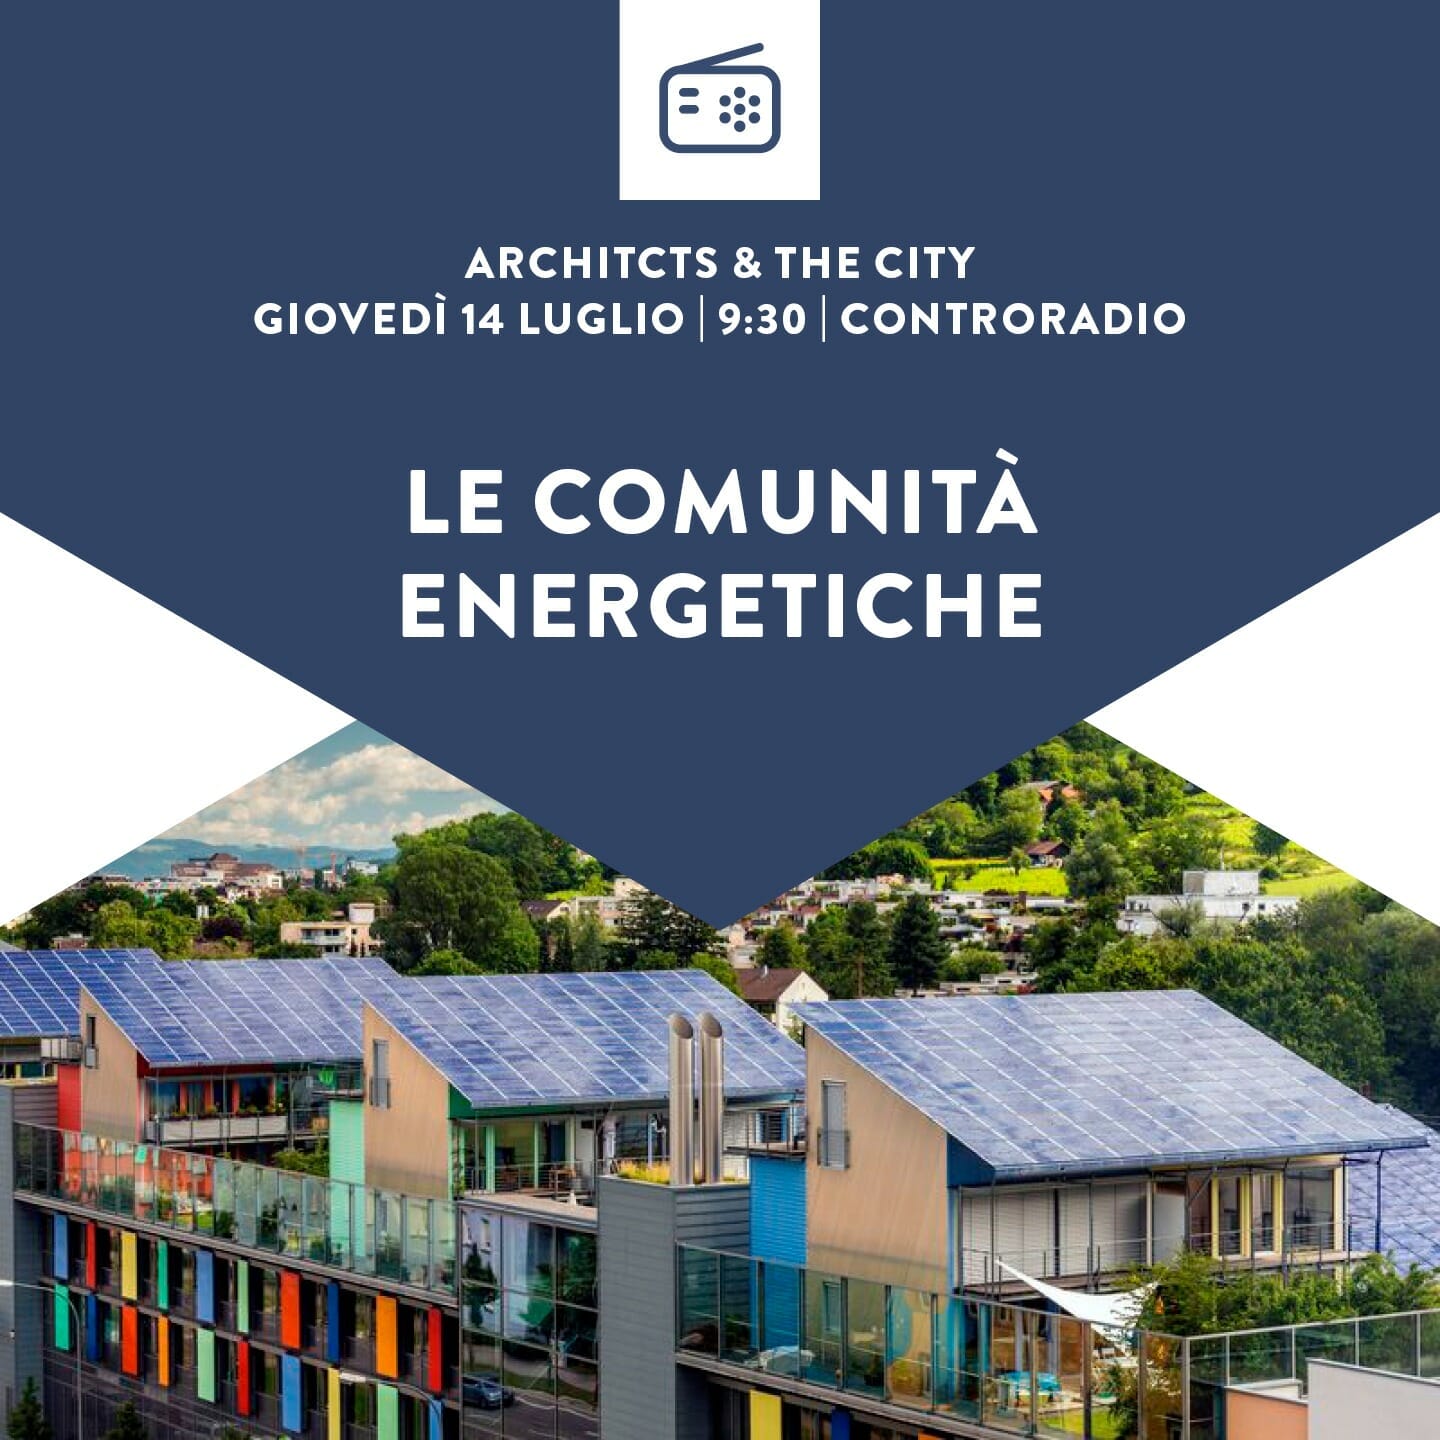 Architects and the City del 14 luglio 2022. Le Comunità Energetiche. PARTE 1